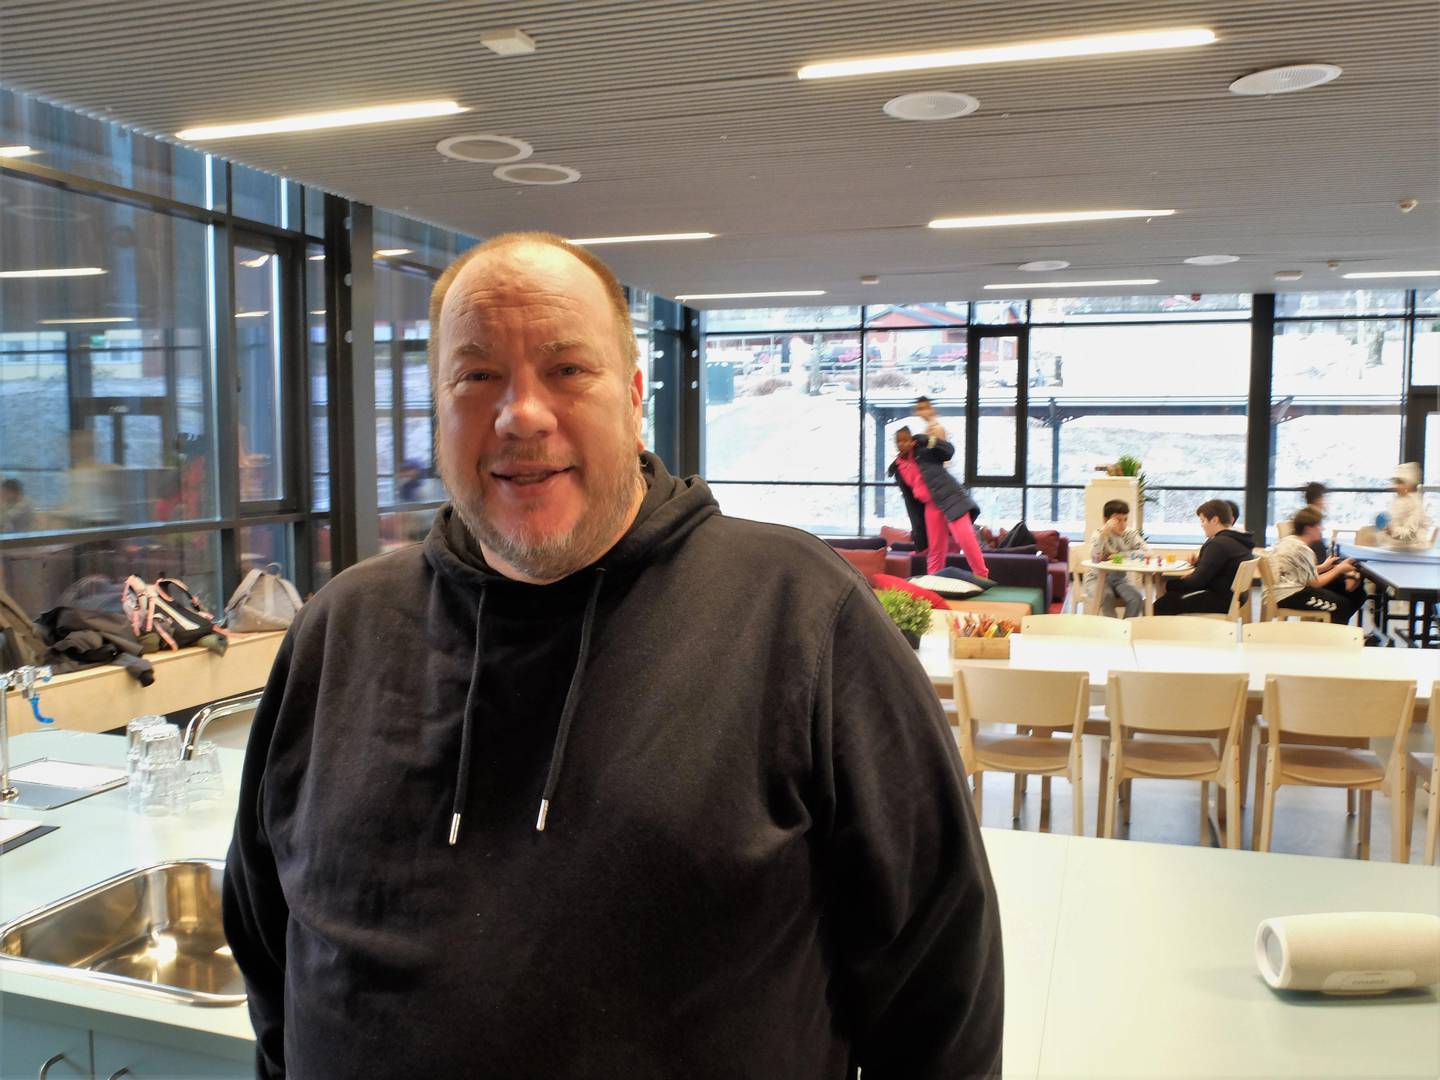 Ole Petter Jenssen er miljøarbeider på Fjell og har vært det i 30 år. I november 2019 prøveåpnet de de nye lokalene i Arena Fjell for første gang.